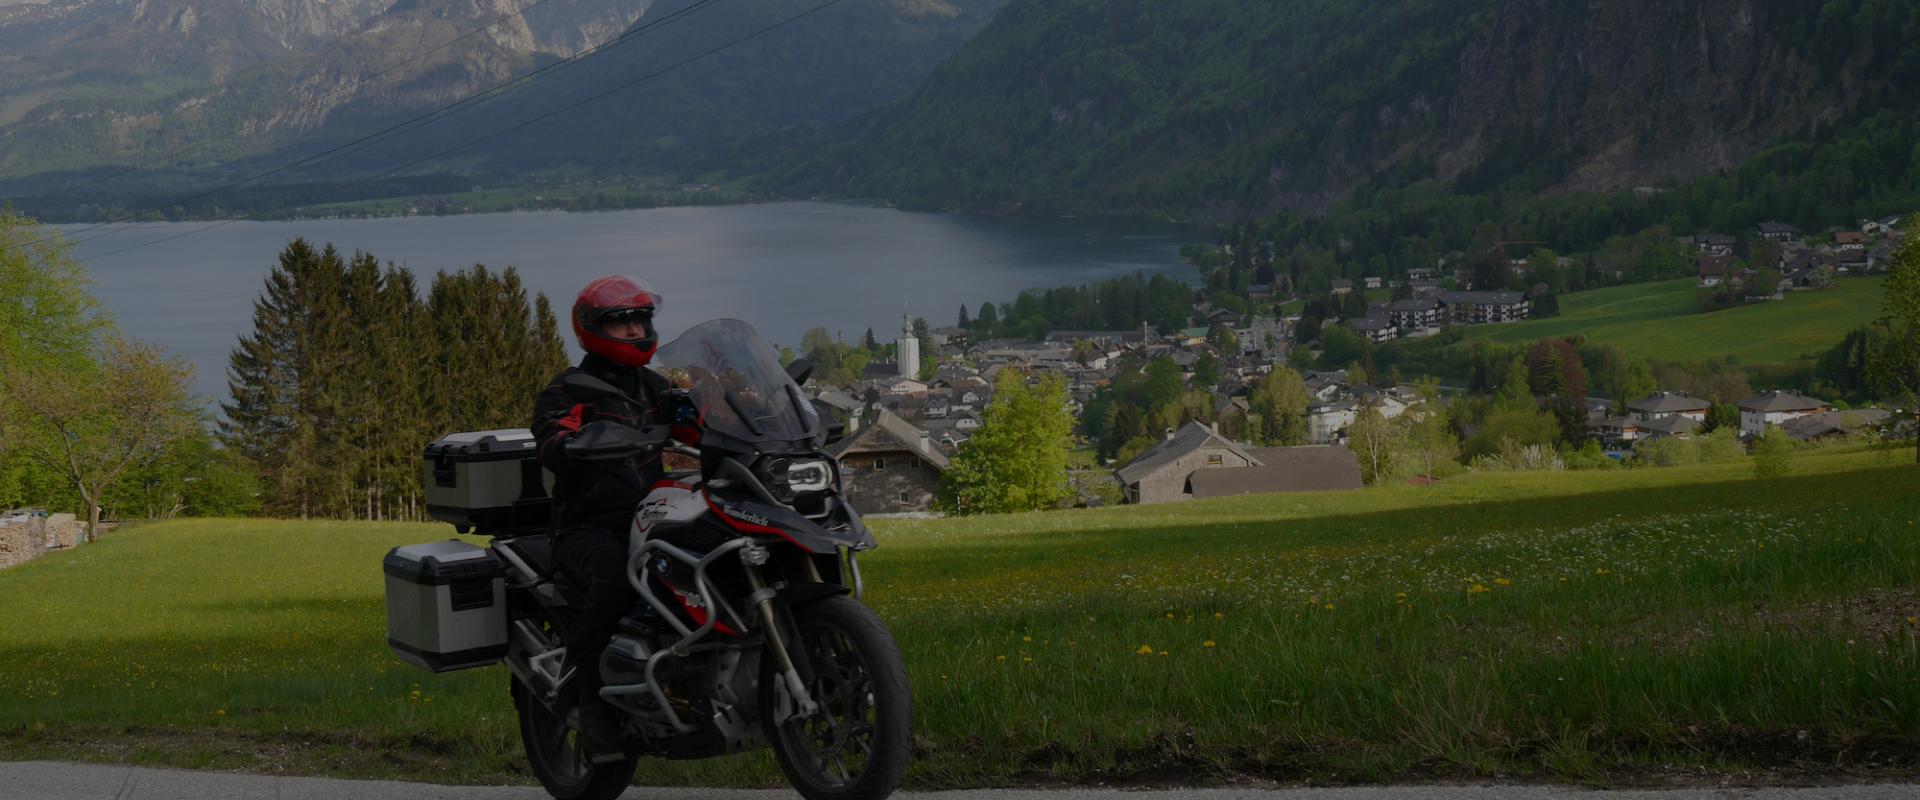 Motorradfahrer auf Motorradtour durch das Salzburger Land